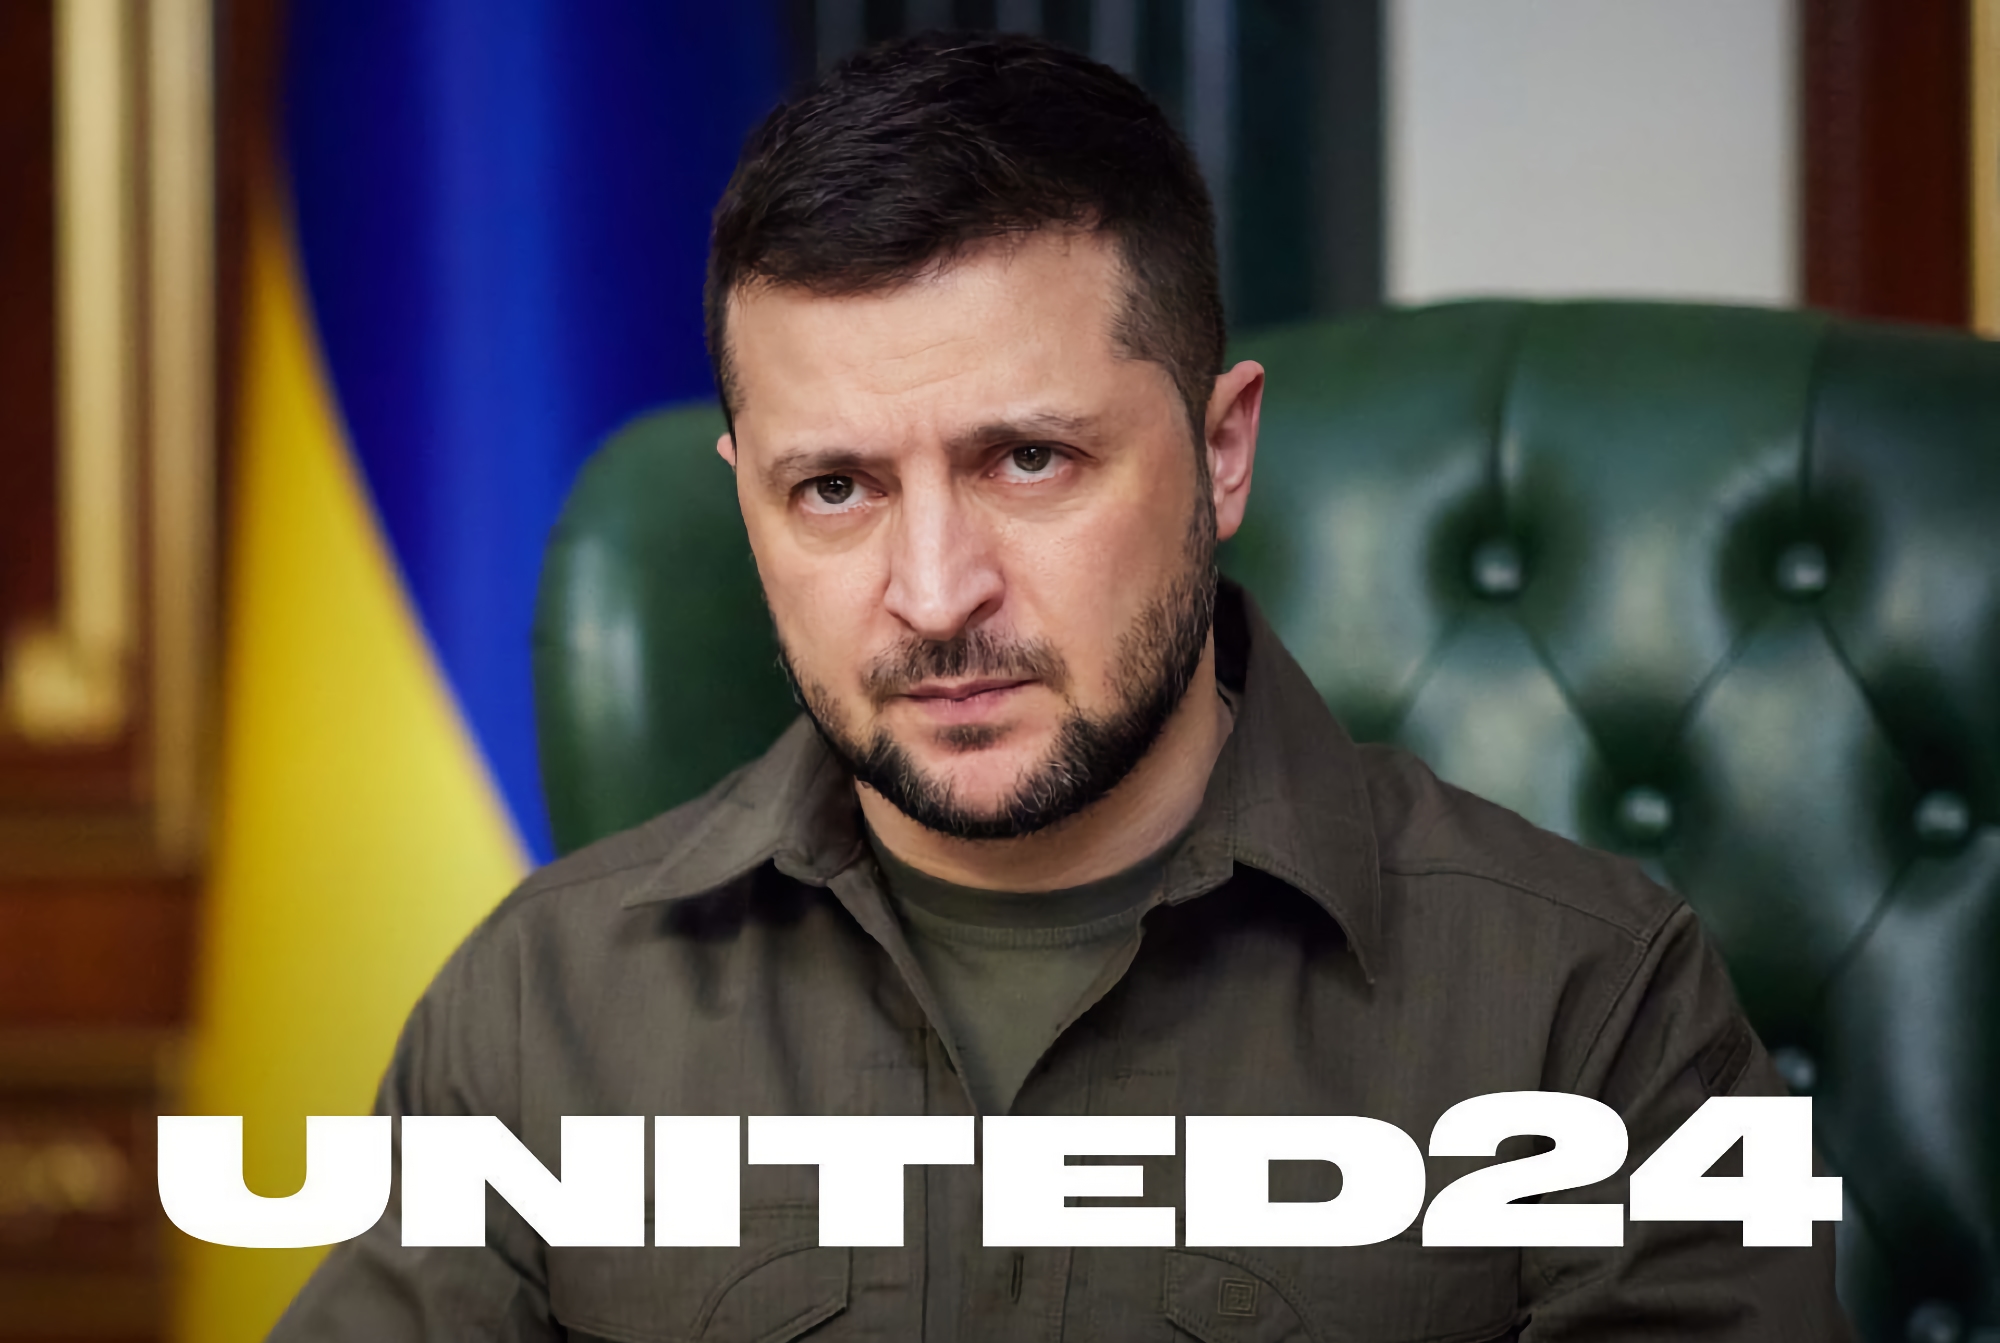 Wolodymyr Zelenskyy kündigte United24 an: eine einzige Plattform zur Beschaffung von Spenden zur Unterstützung der Ukraine